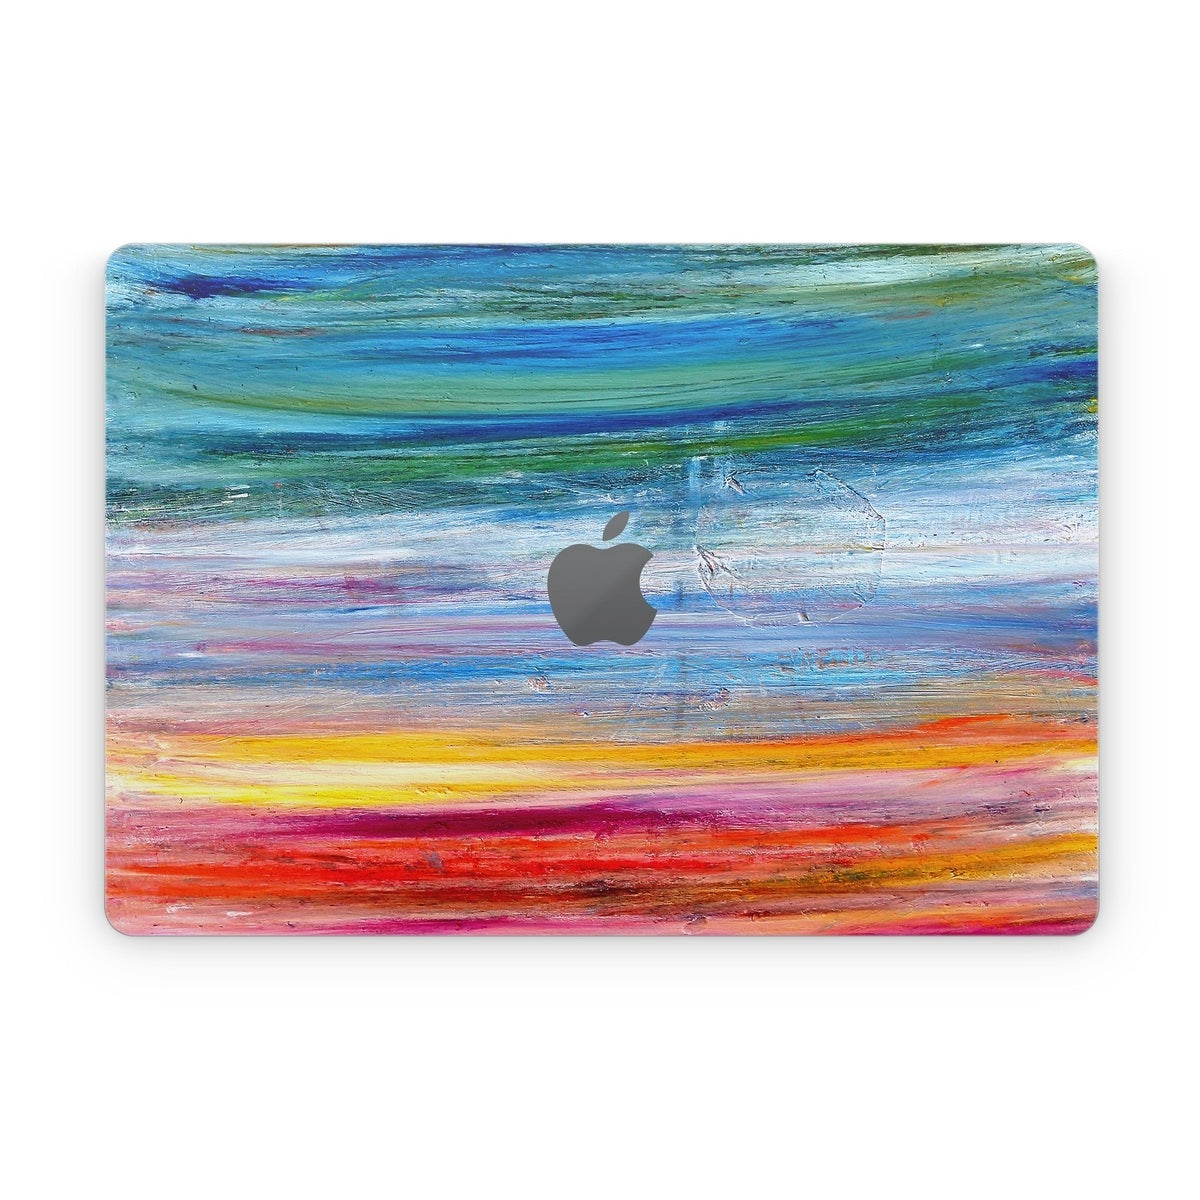 Waterfall - Apple MacBook Skin